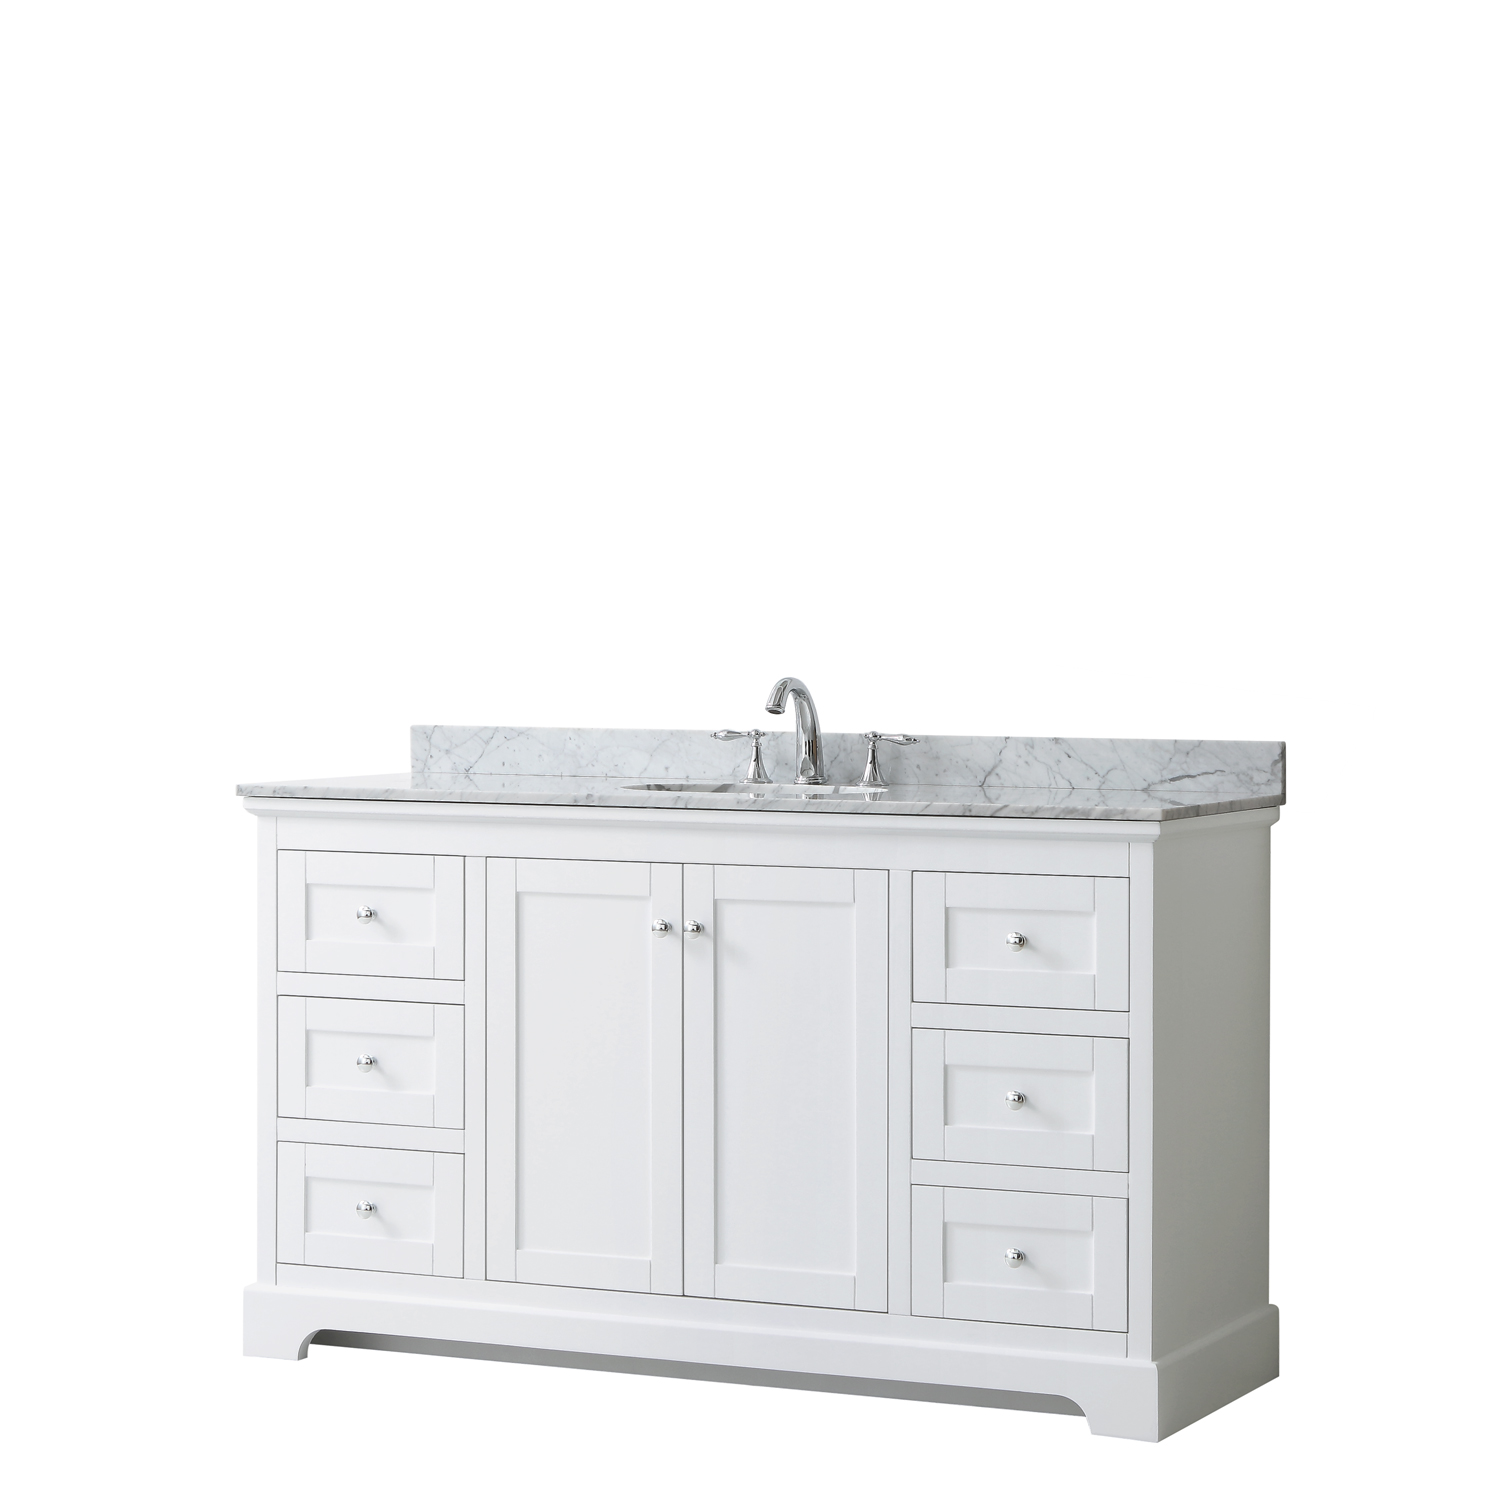 60" Single Bathroom Vanity in White, No Countertop, No Sink, and No Mirror